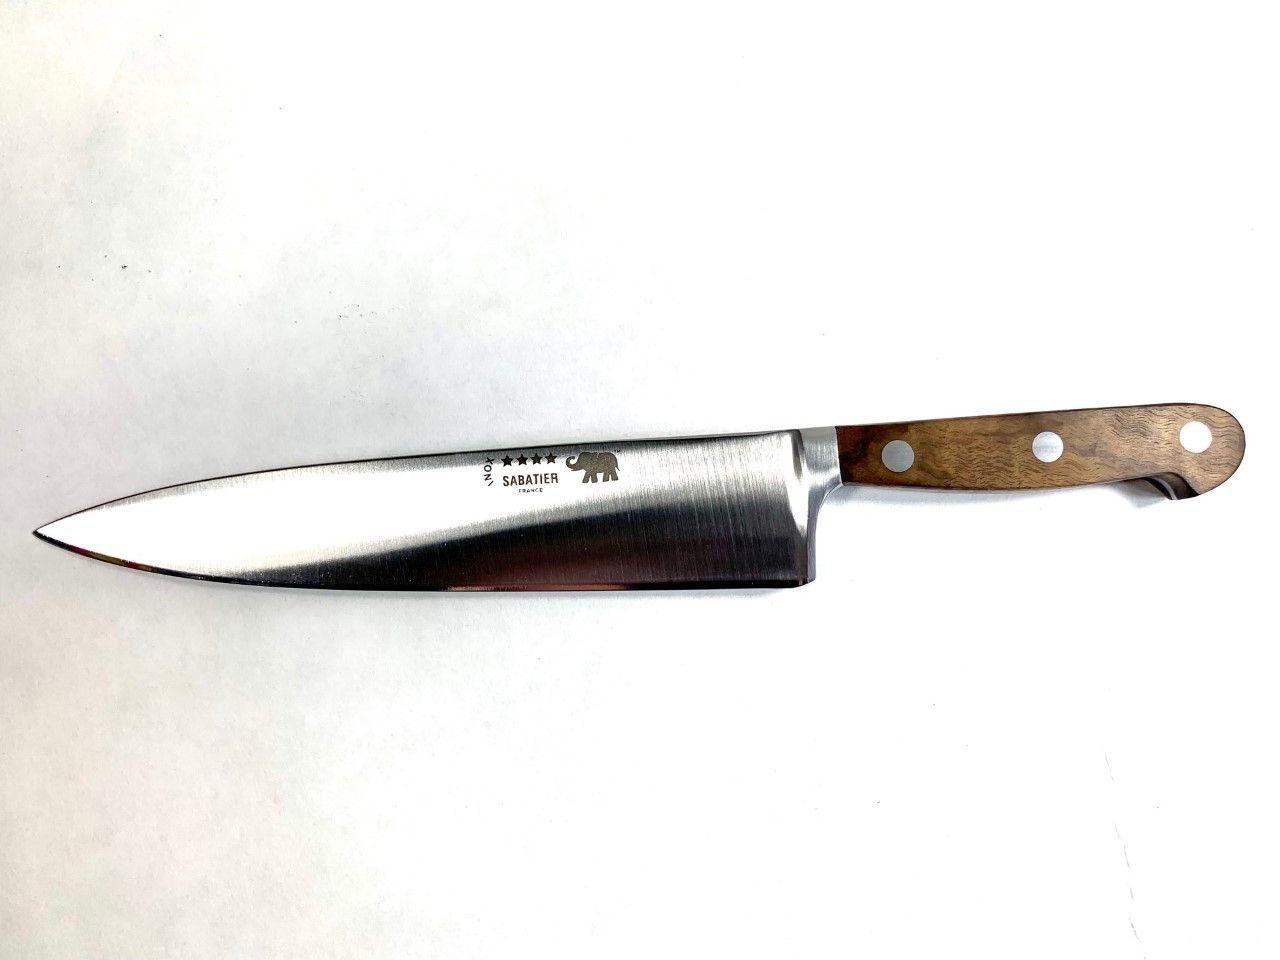 Couteau de cuisine inox 20cm SABATIER par THIERS-ISSARD manche Ronce de Noyer